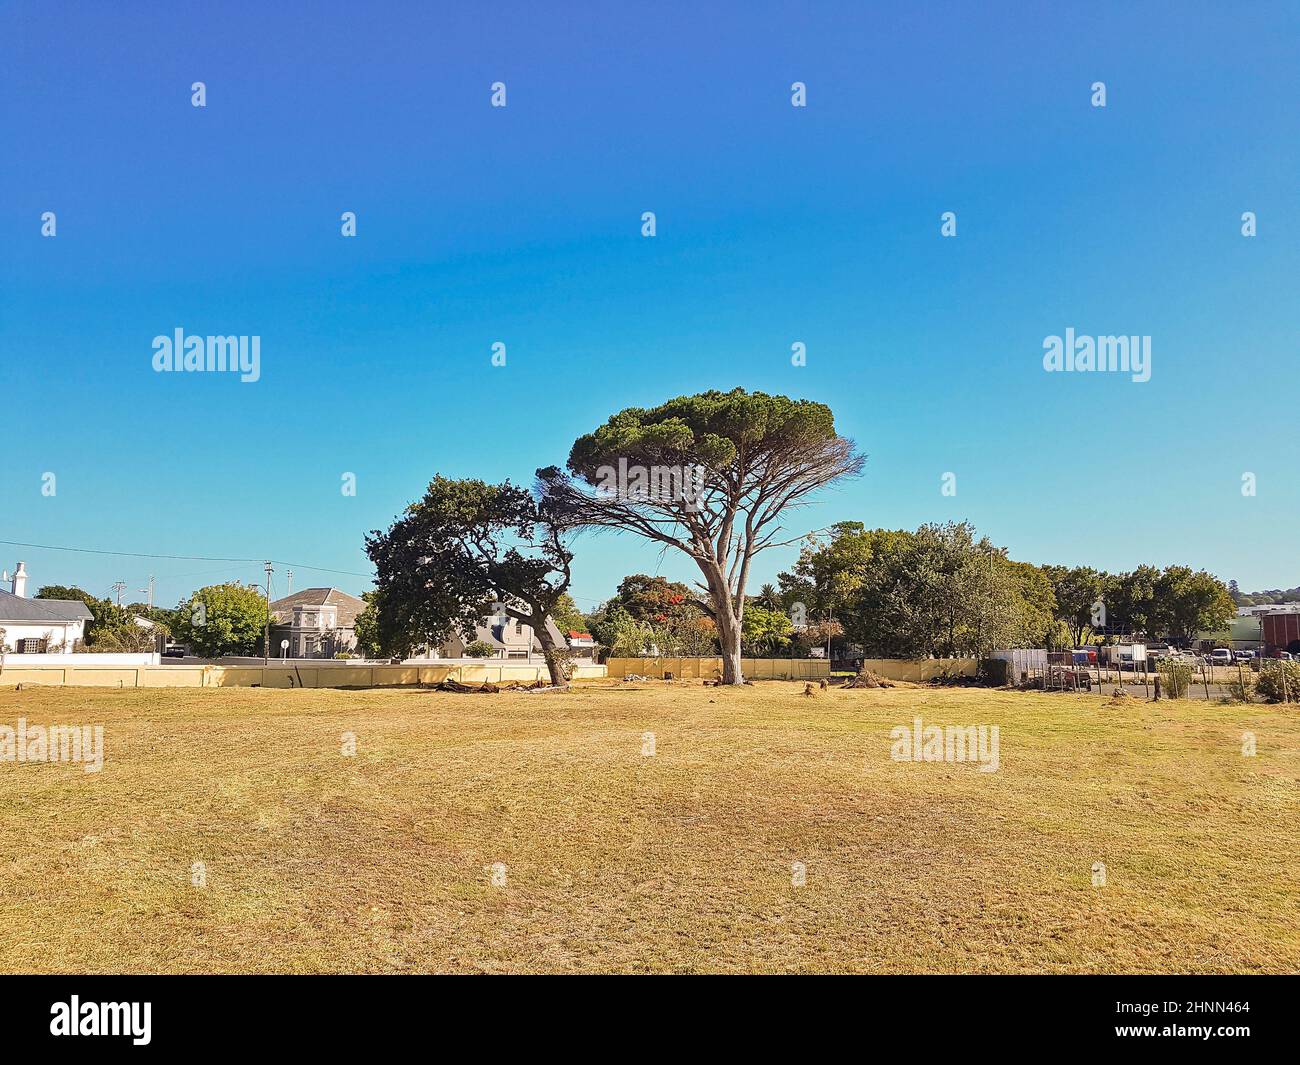 Arbre géant africain dans le parc, le Cap, Afrique du Sud. Banque D'Images